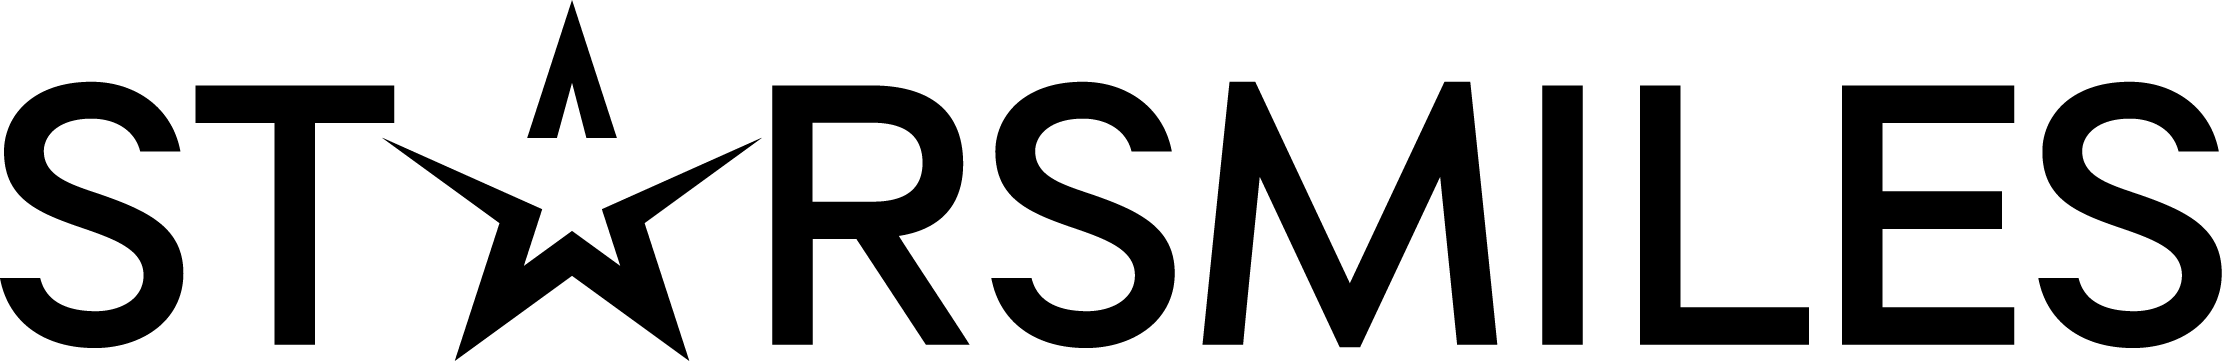 STARSMILES logo